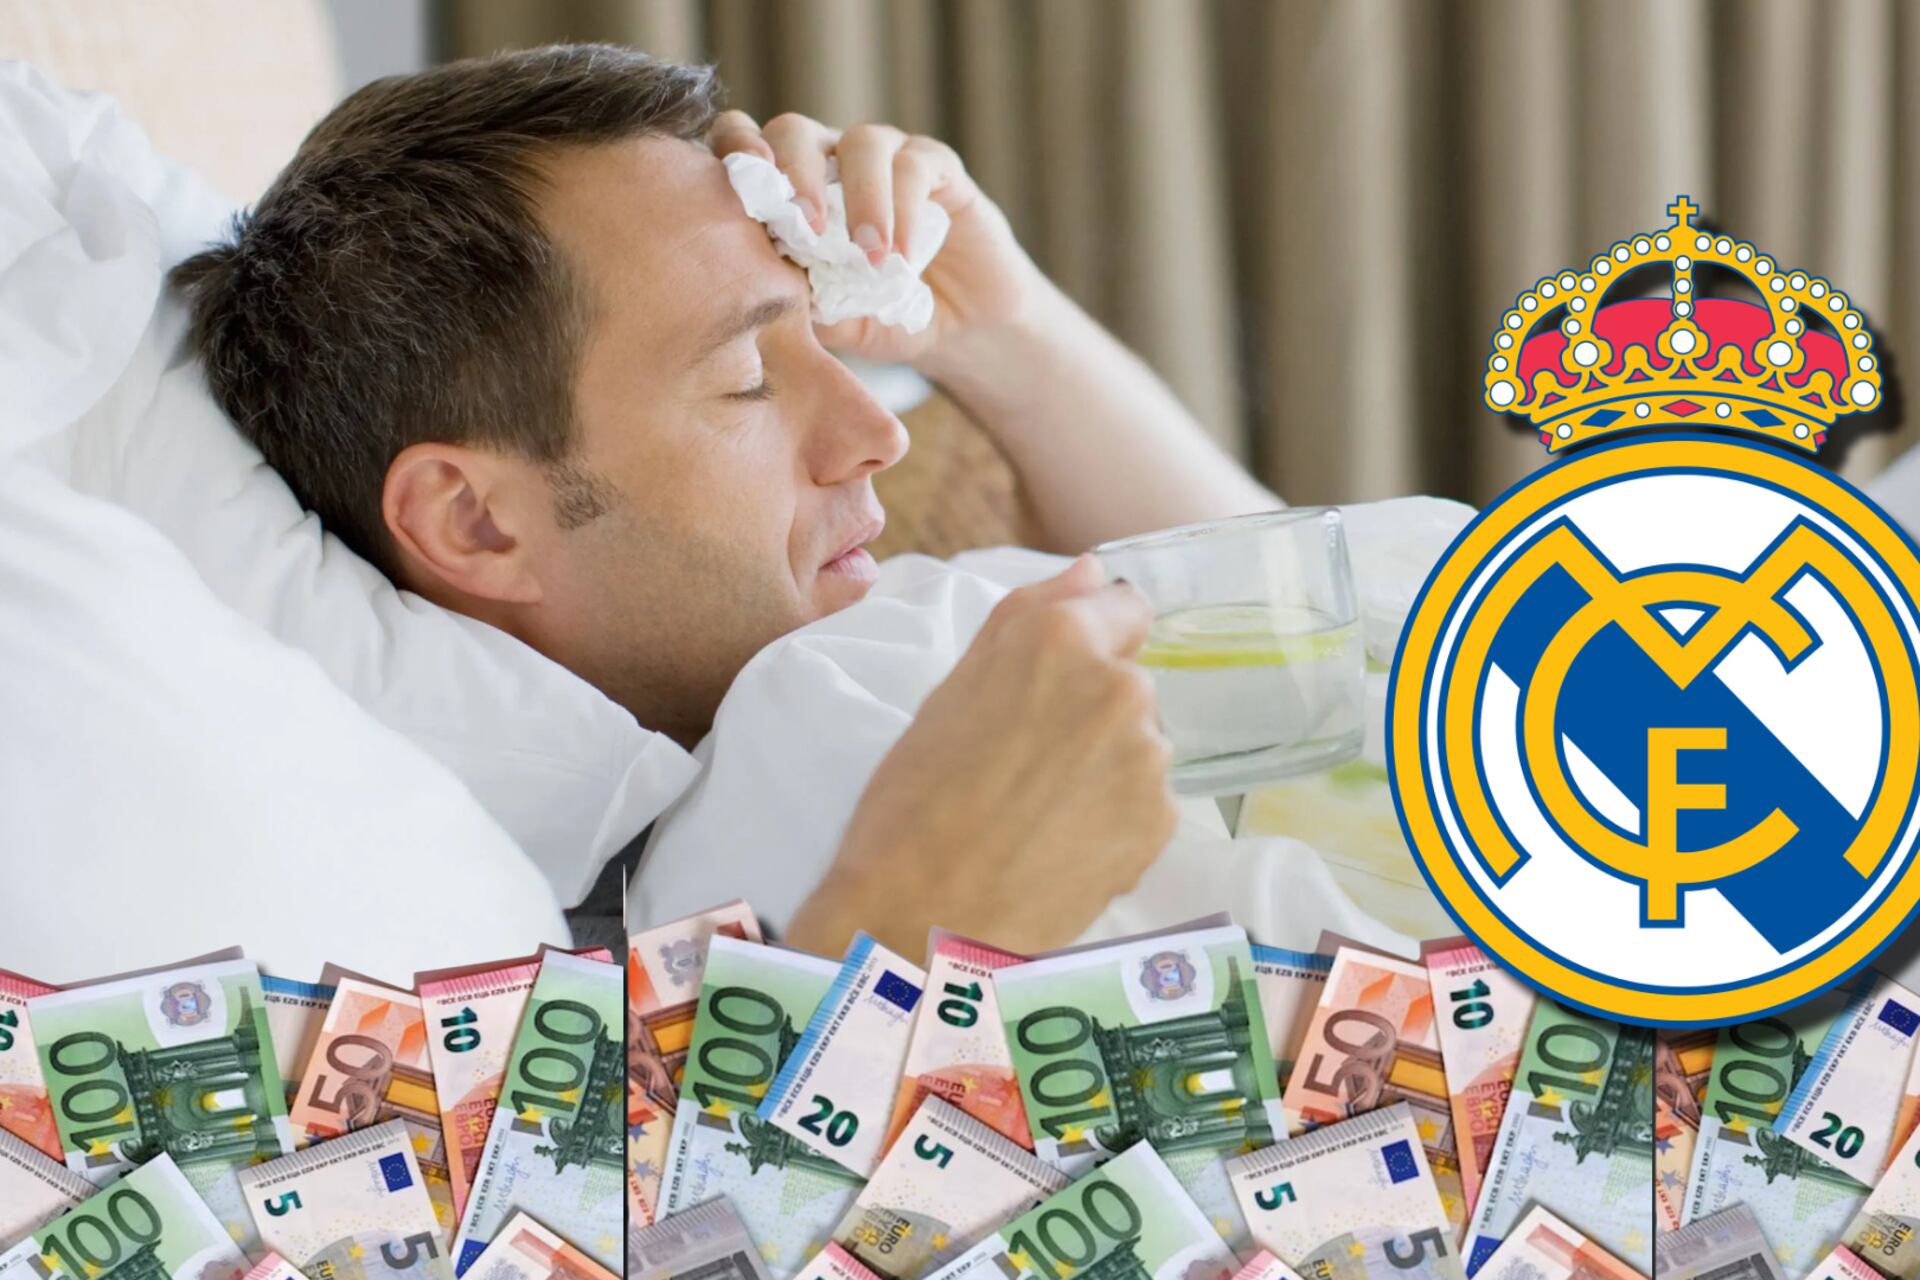 El Madrid casi paga 130 millones, jugador fingió estar enfermo para ir de fiesta